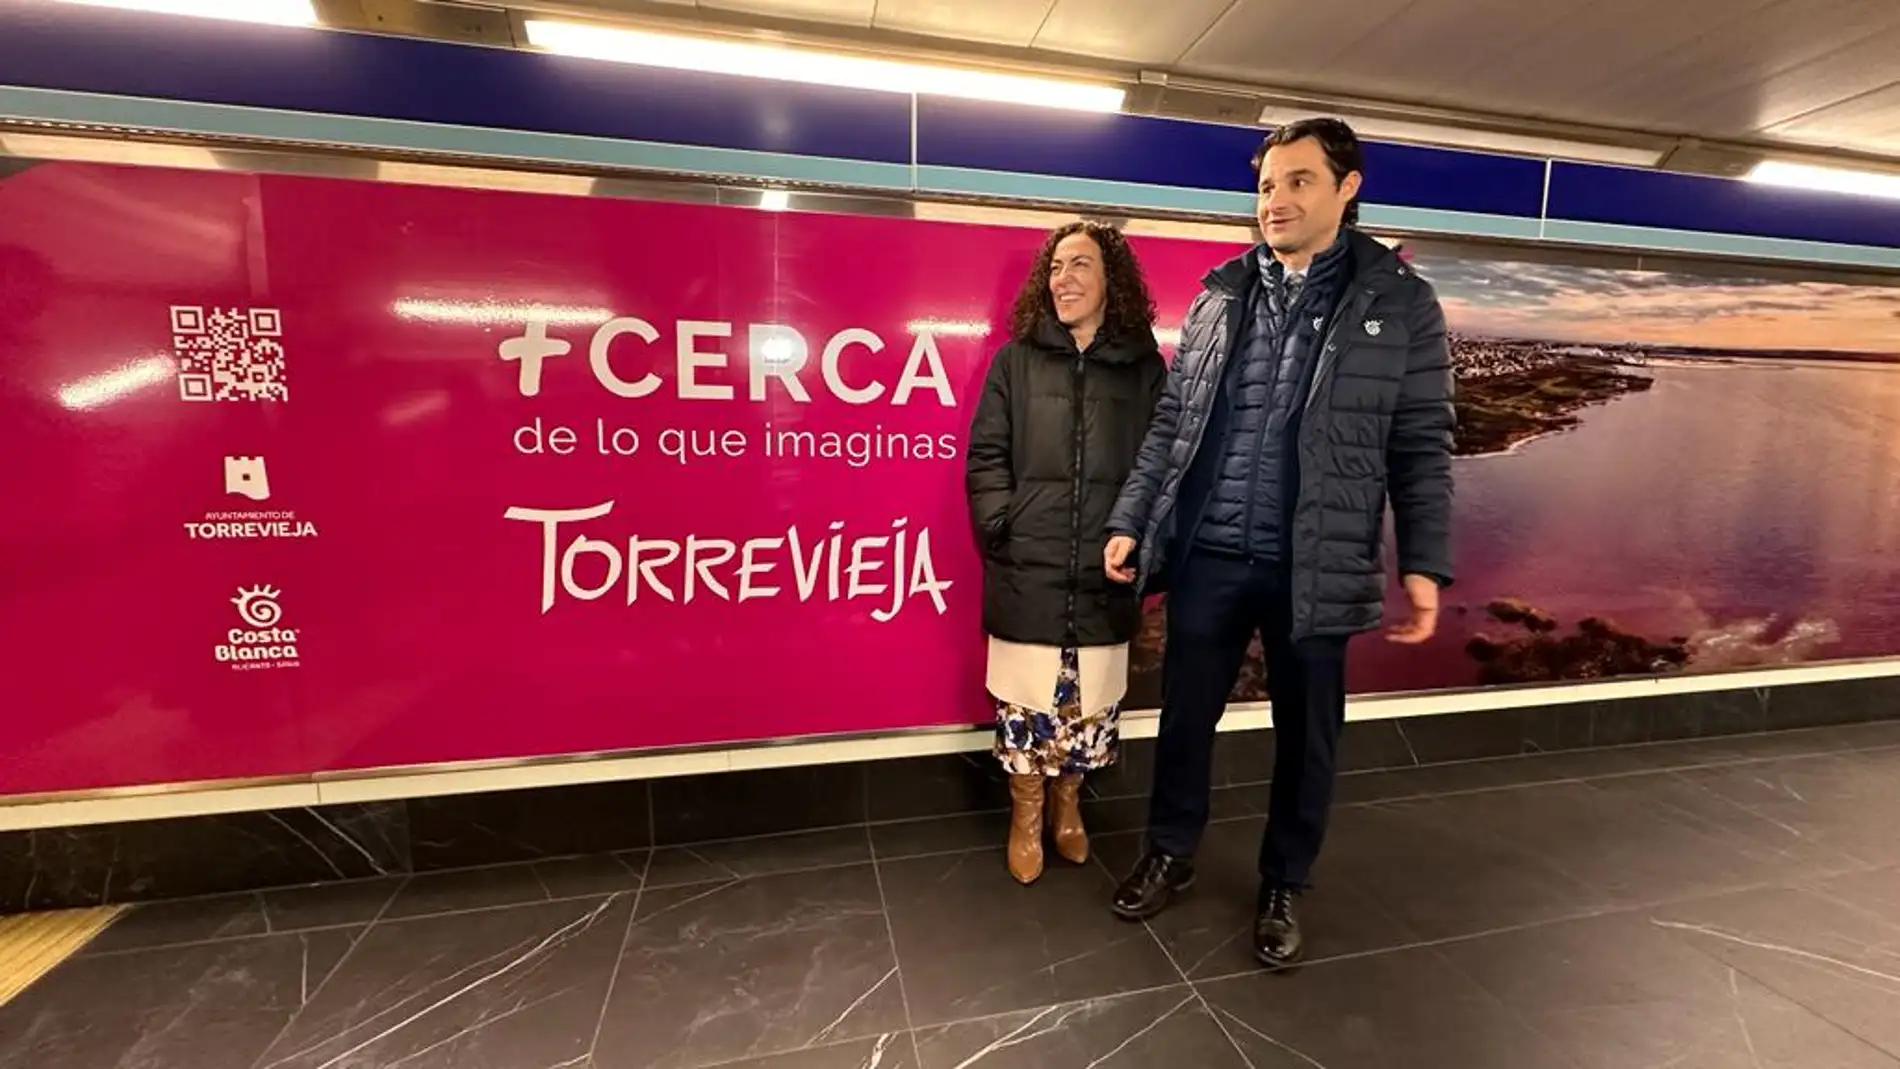 La nueva promoción turística de Torrevieja decora una estacion de metro de Madrid 